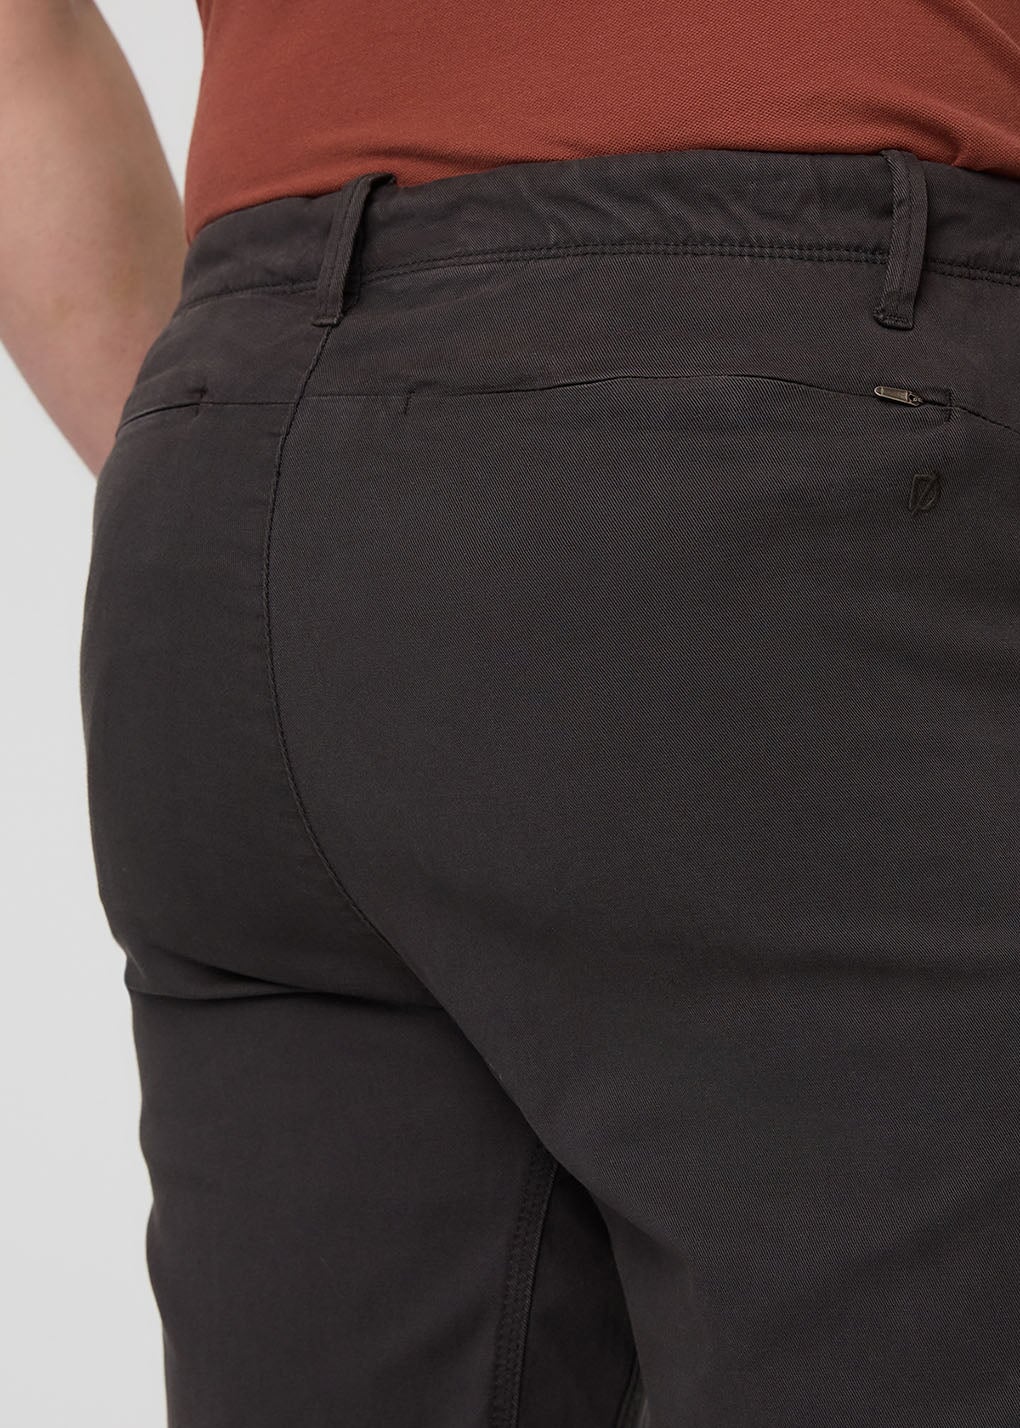 Pants - Shop Men's Chinos, Trousers & Pants